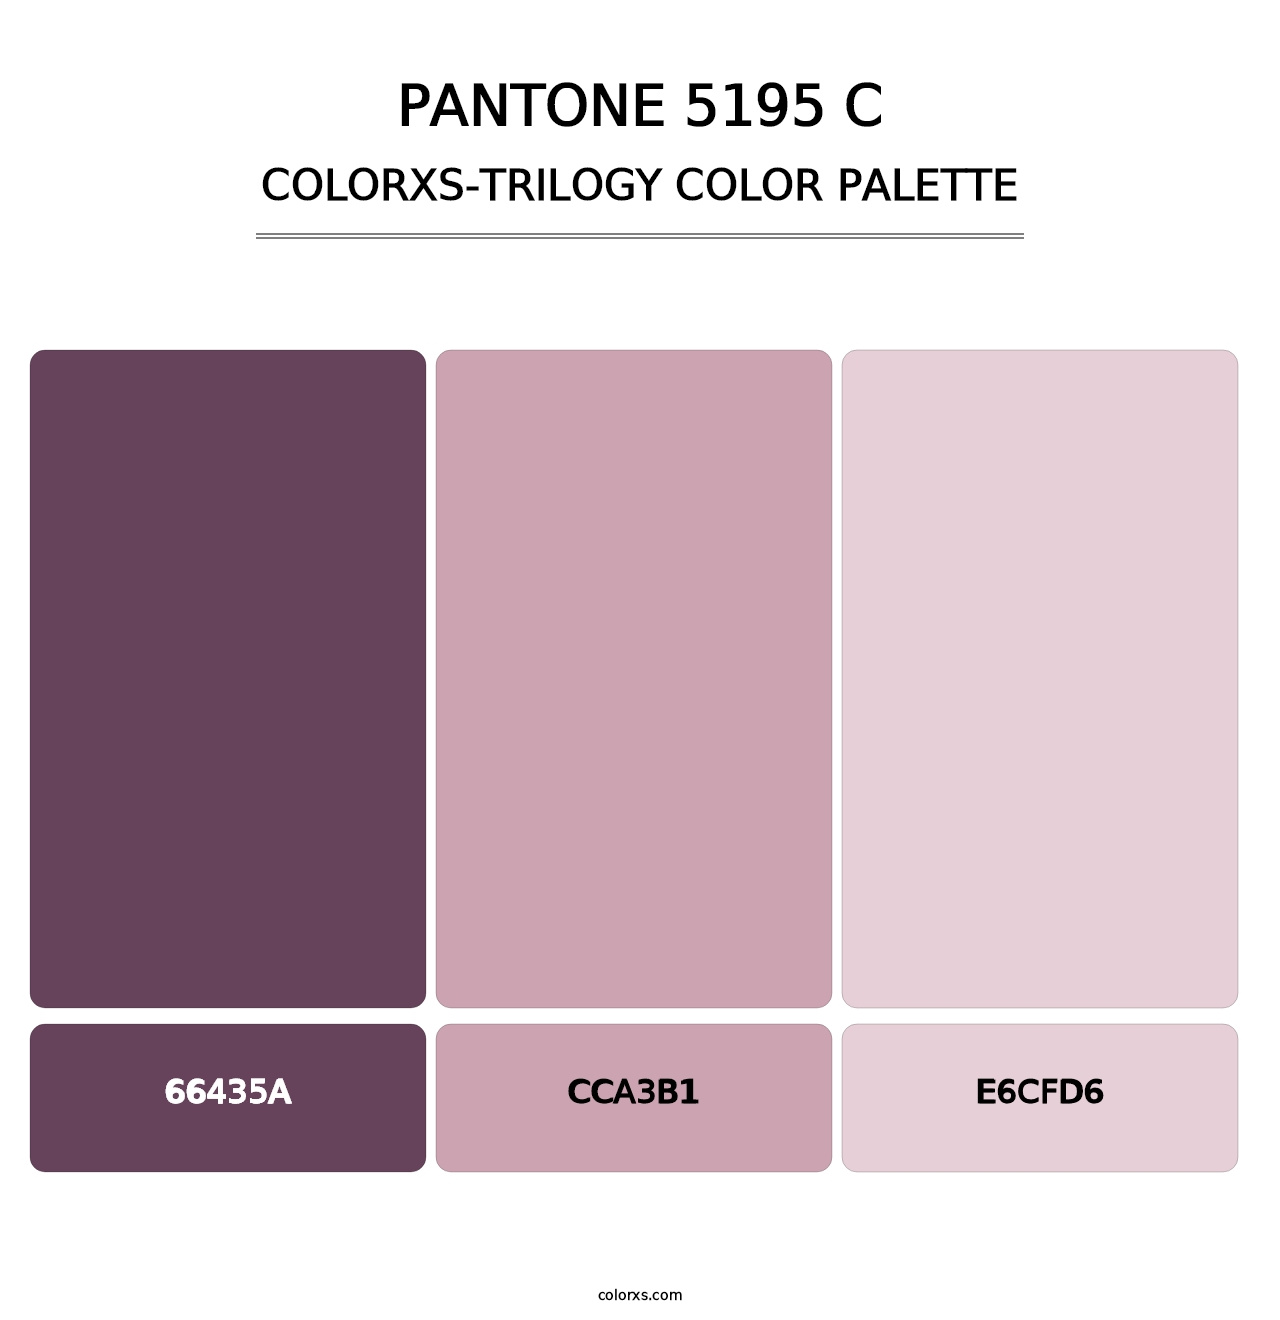 PANTONE 5195 C - Colorxs Trilogy Palette